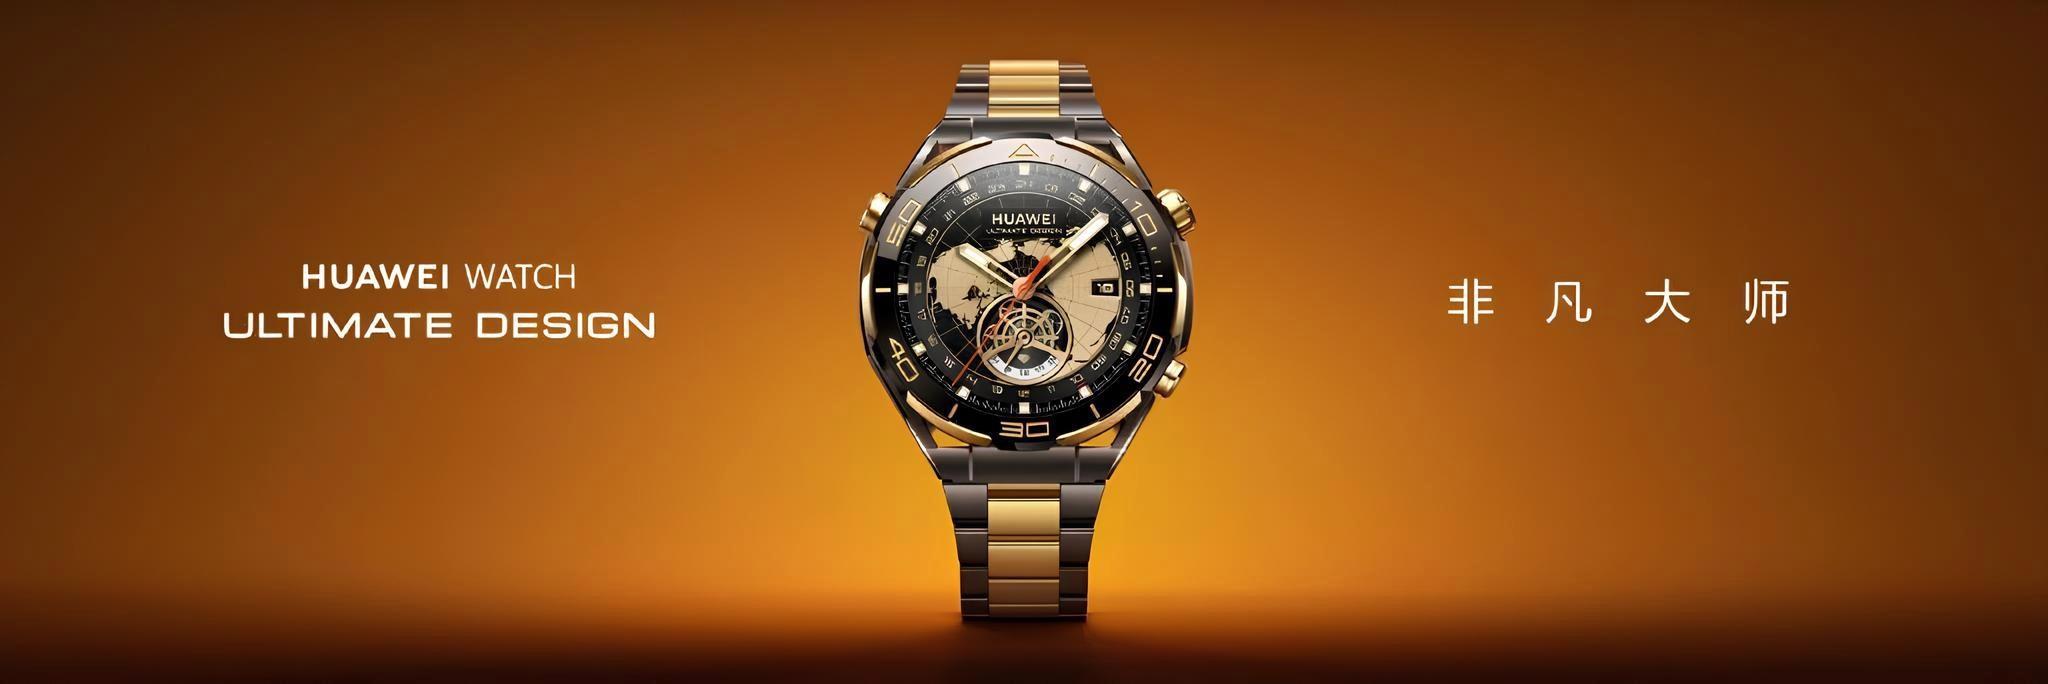 Huawei Watch Ultimate Gold Edition tanıtıldı: Cep yakacak